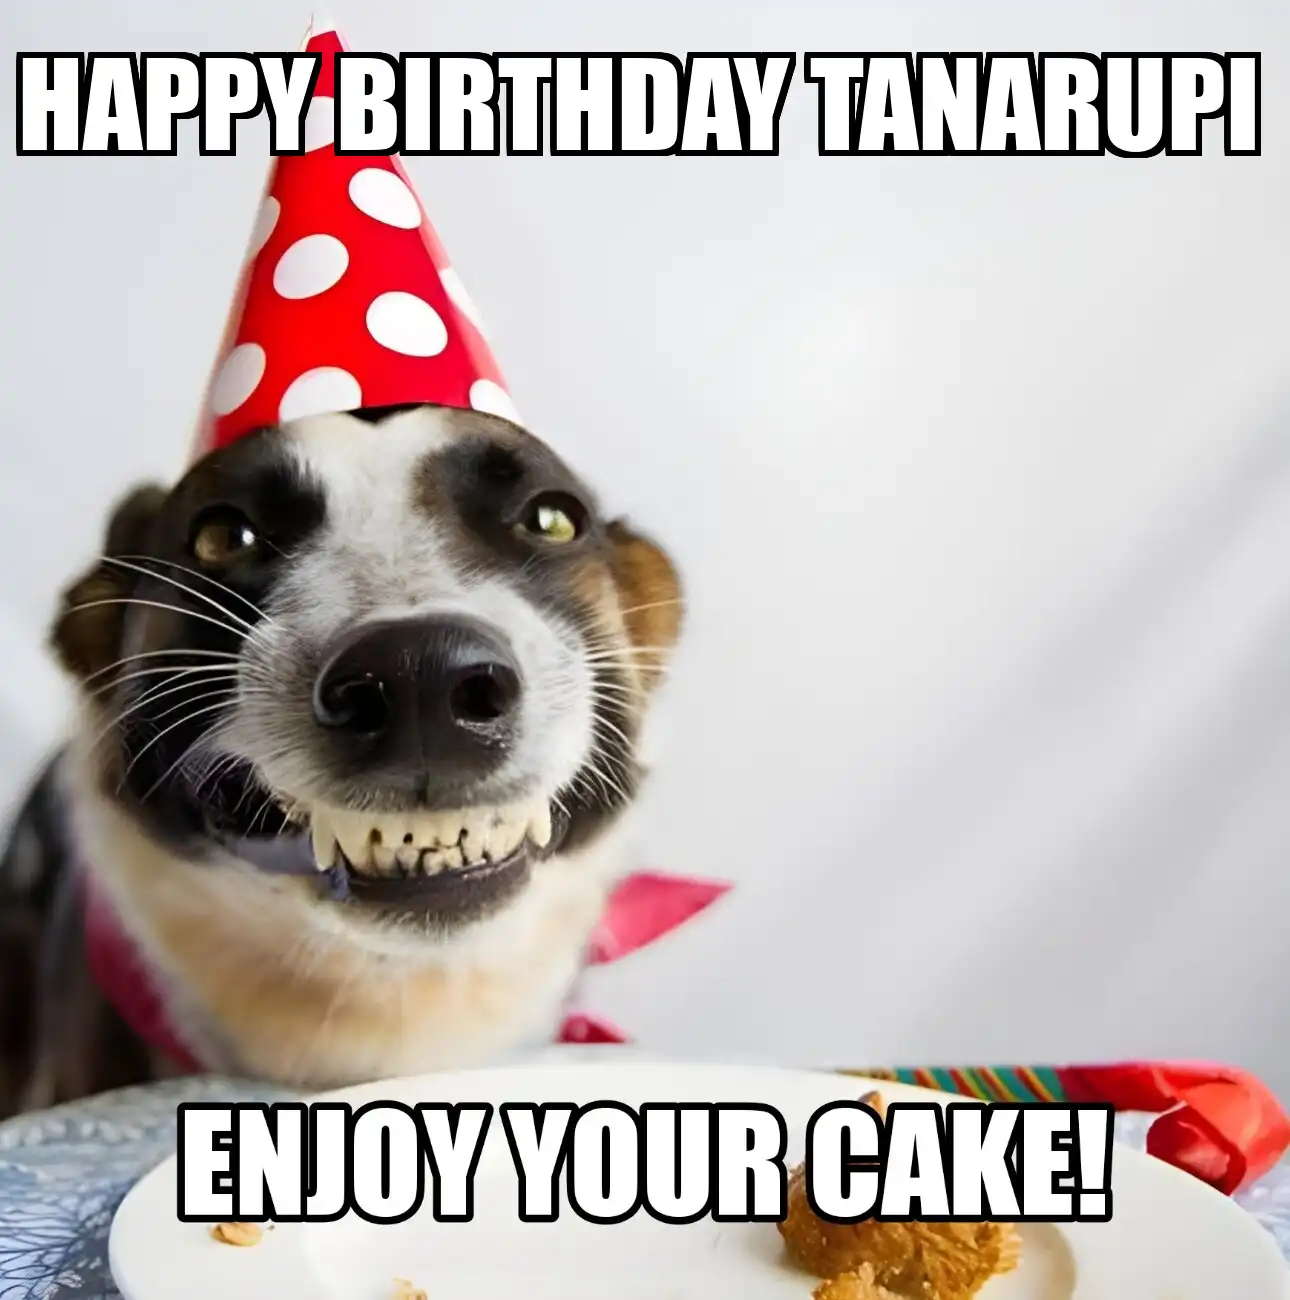 Happy Birthday Tanarupi Enjoy Your Cake Dog Meme